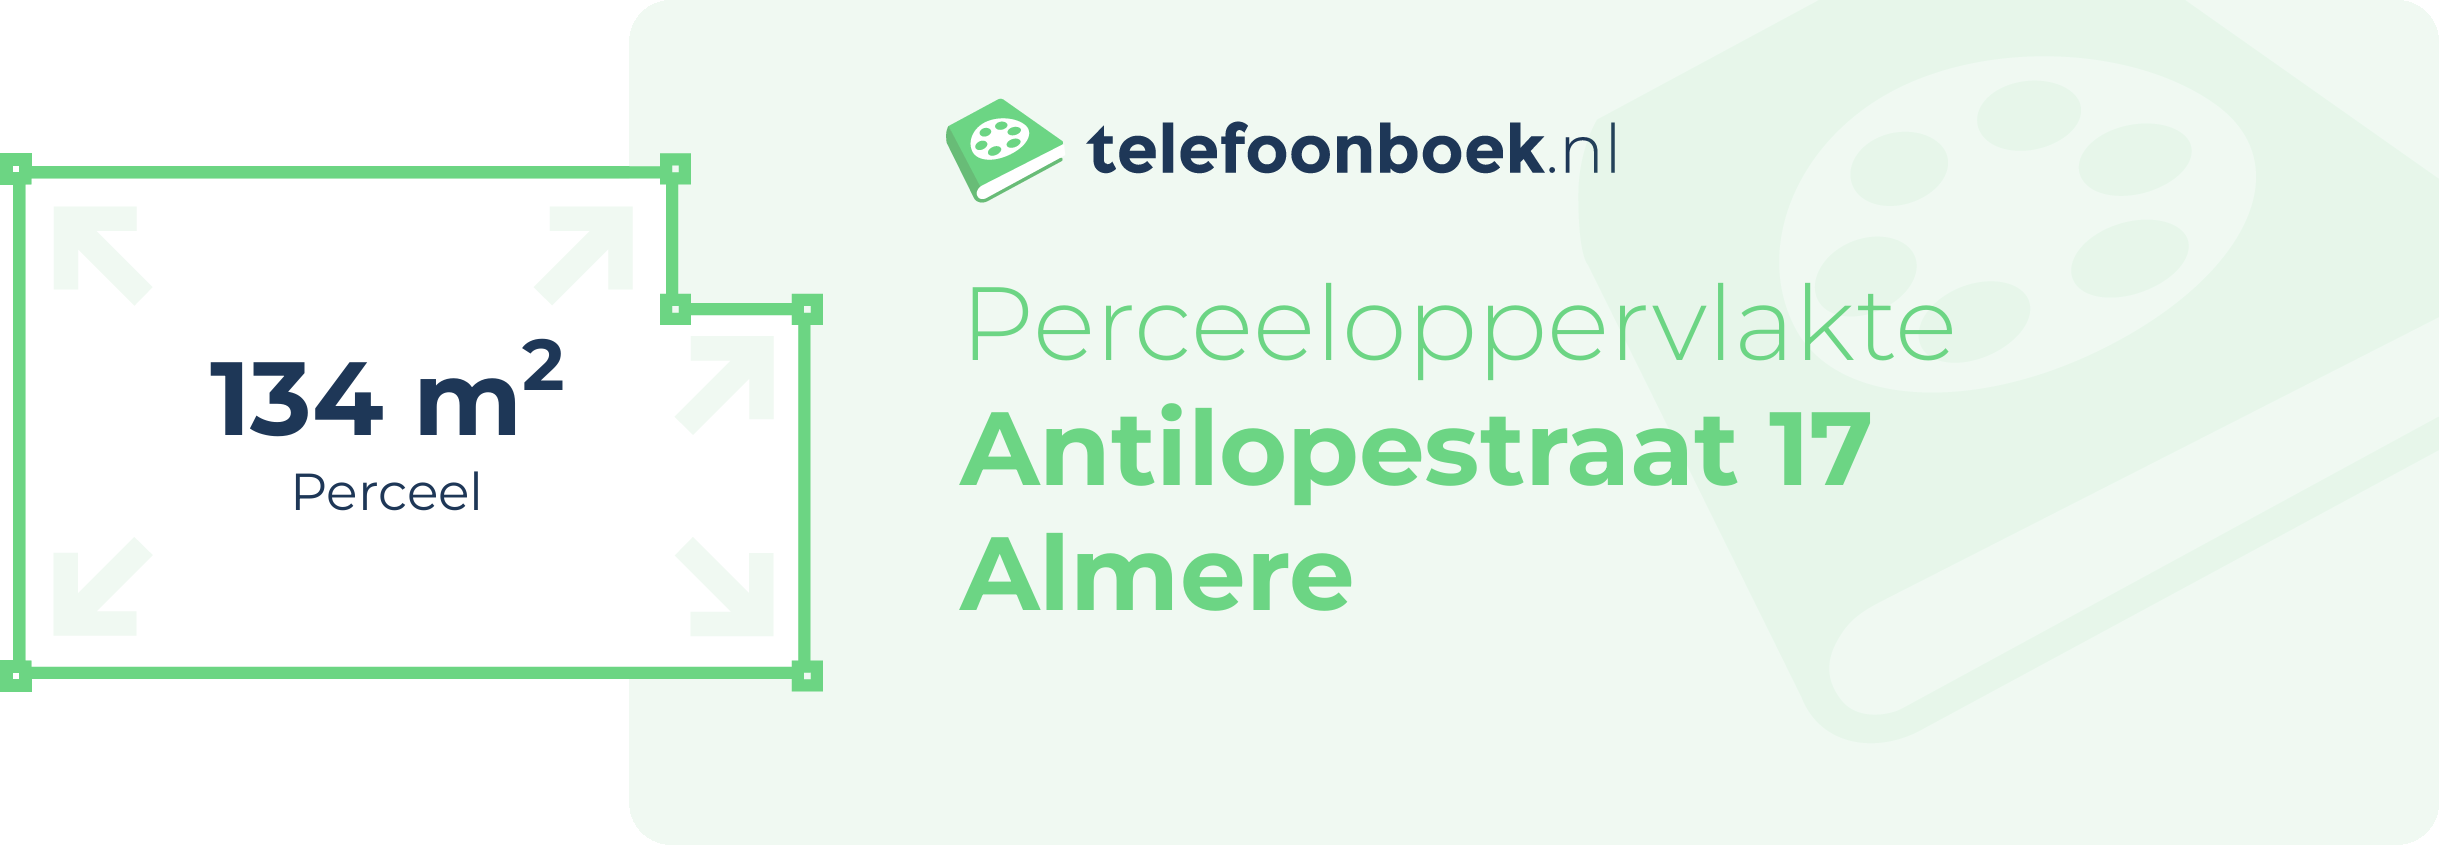 Perceeloppervlakte Antilopestraat 17 Almere